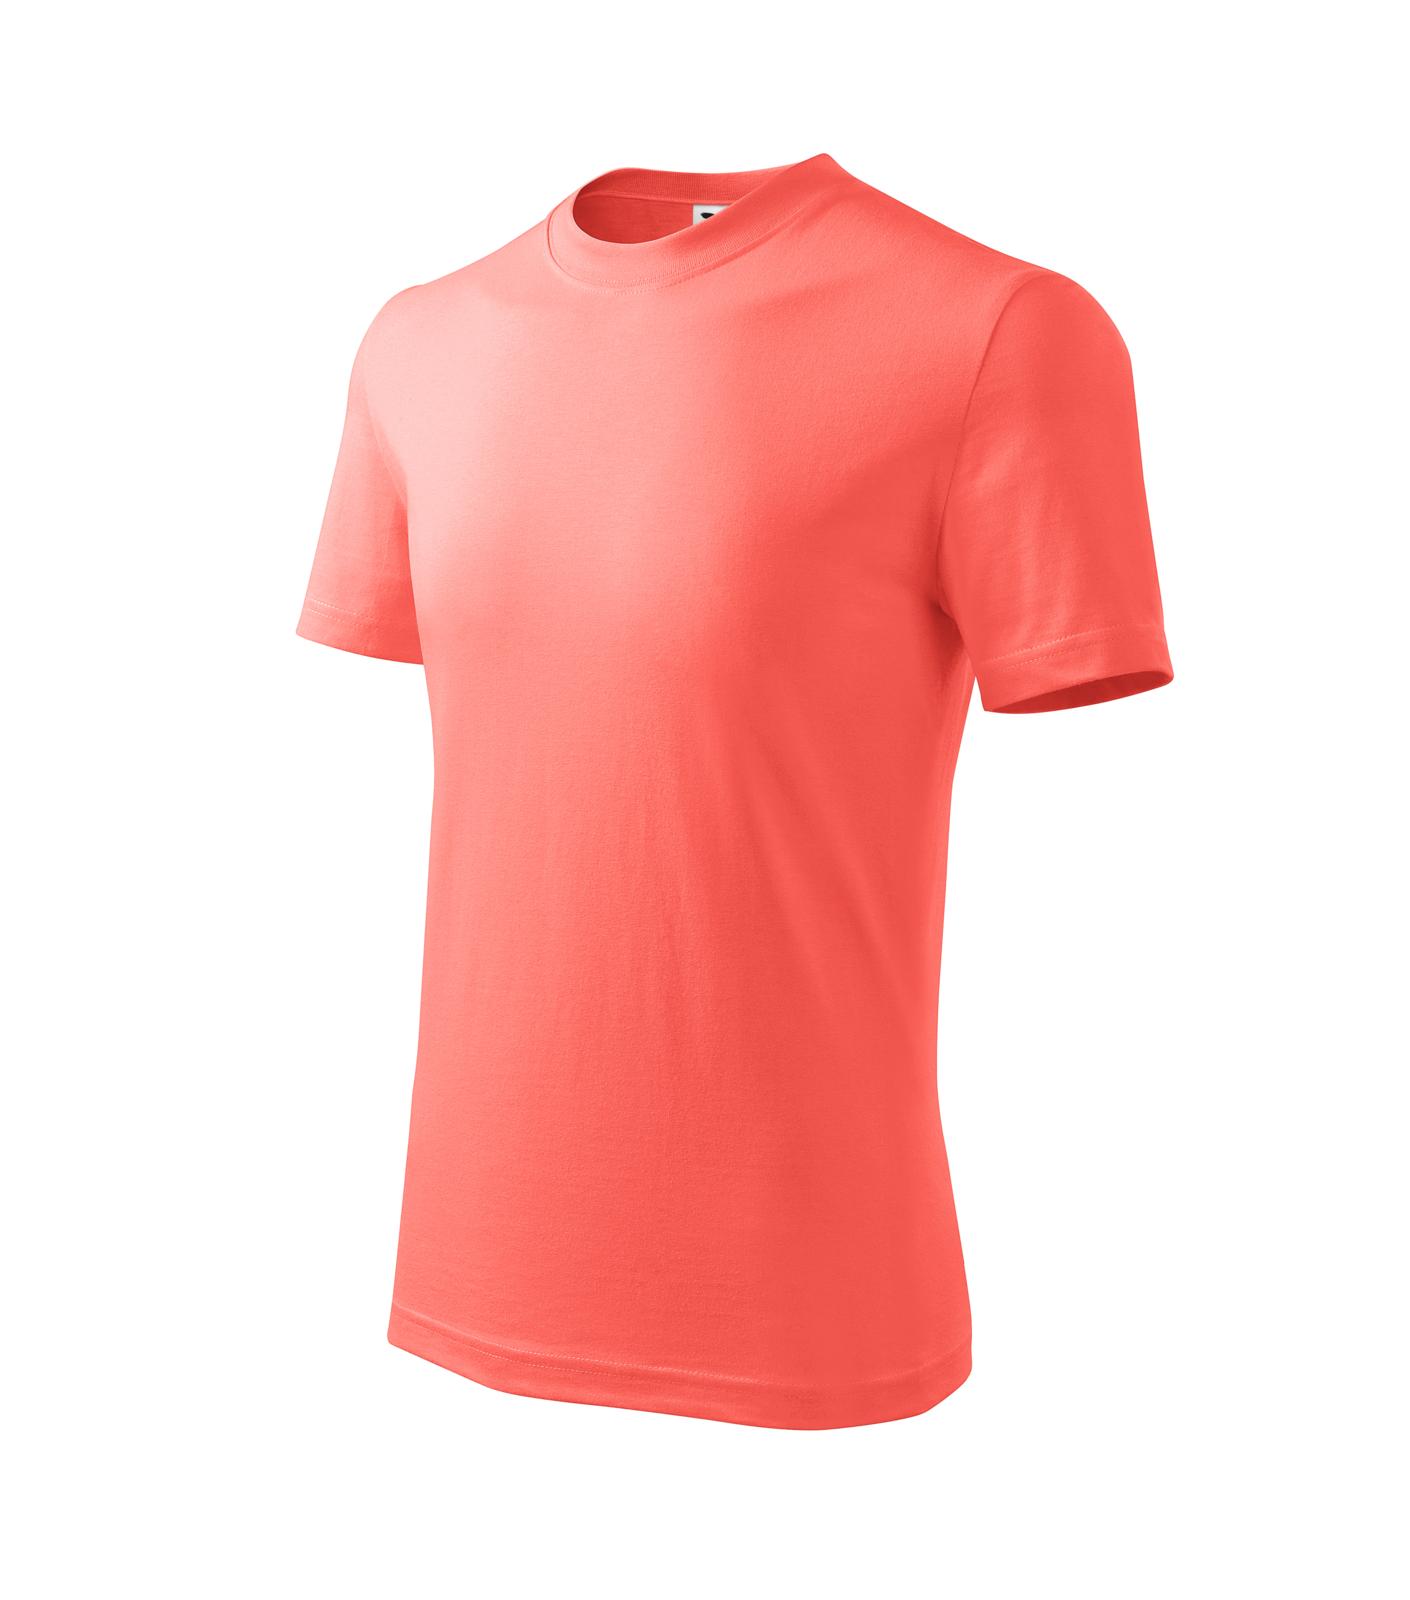 Basic Tričko dětské Barva: korálová, Velikost: 110 cm/4 roky